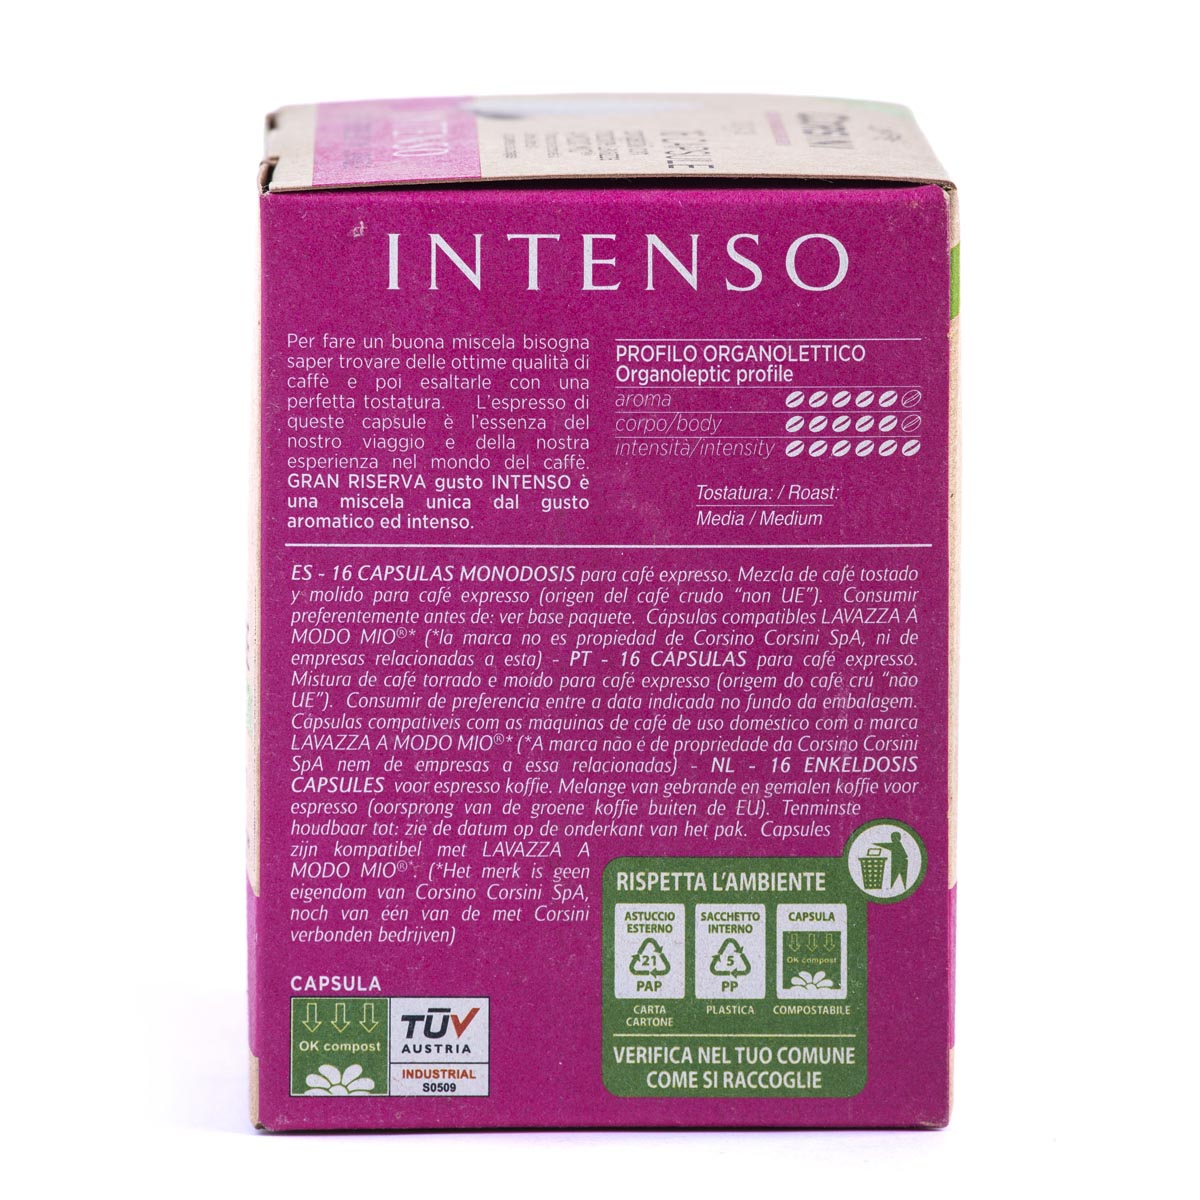 16 compostable Lavazza®* A Modo Mio®* compatible coffee capsules per pack | Gran Riserva Intenso | Box of 12